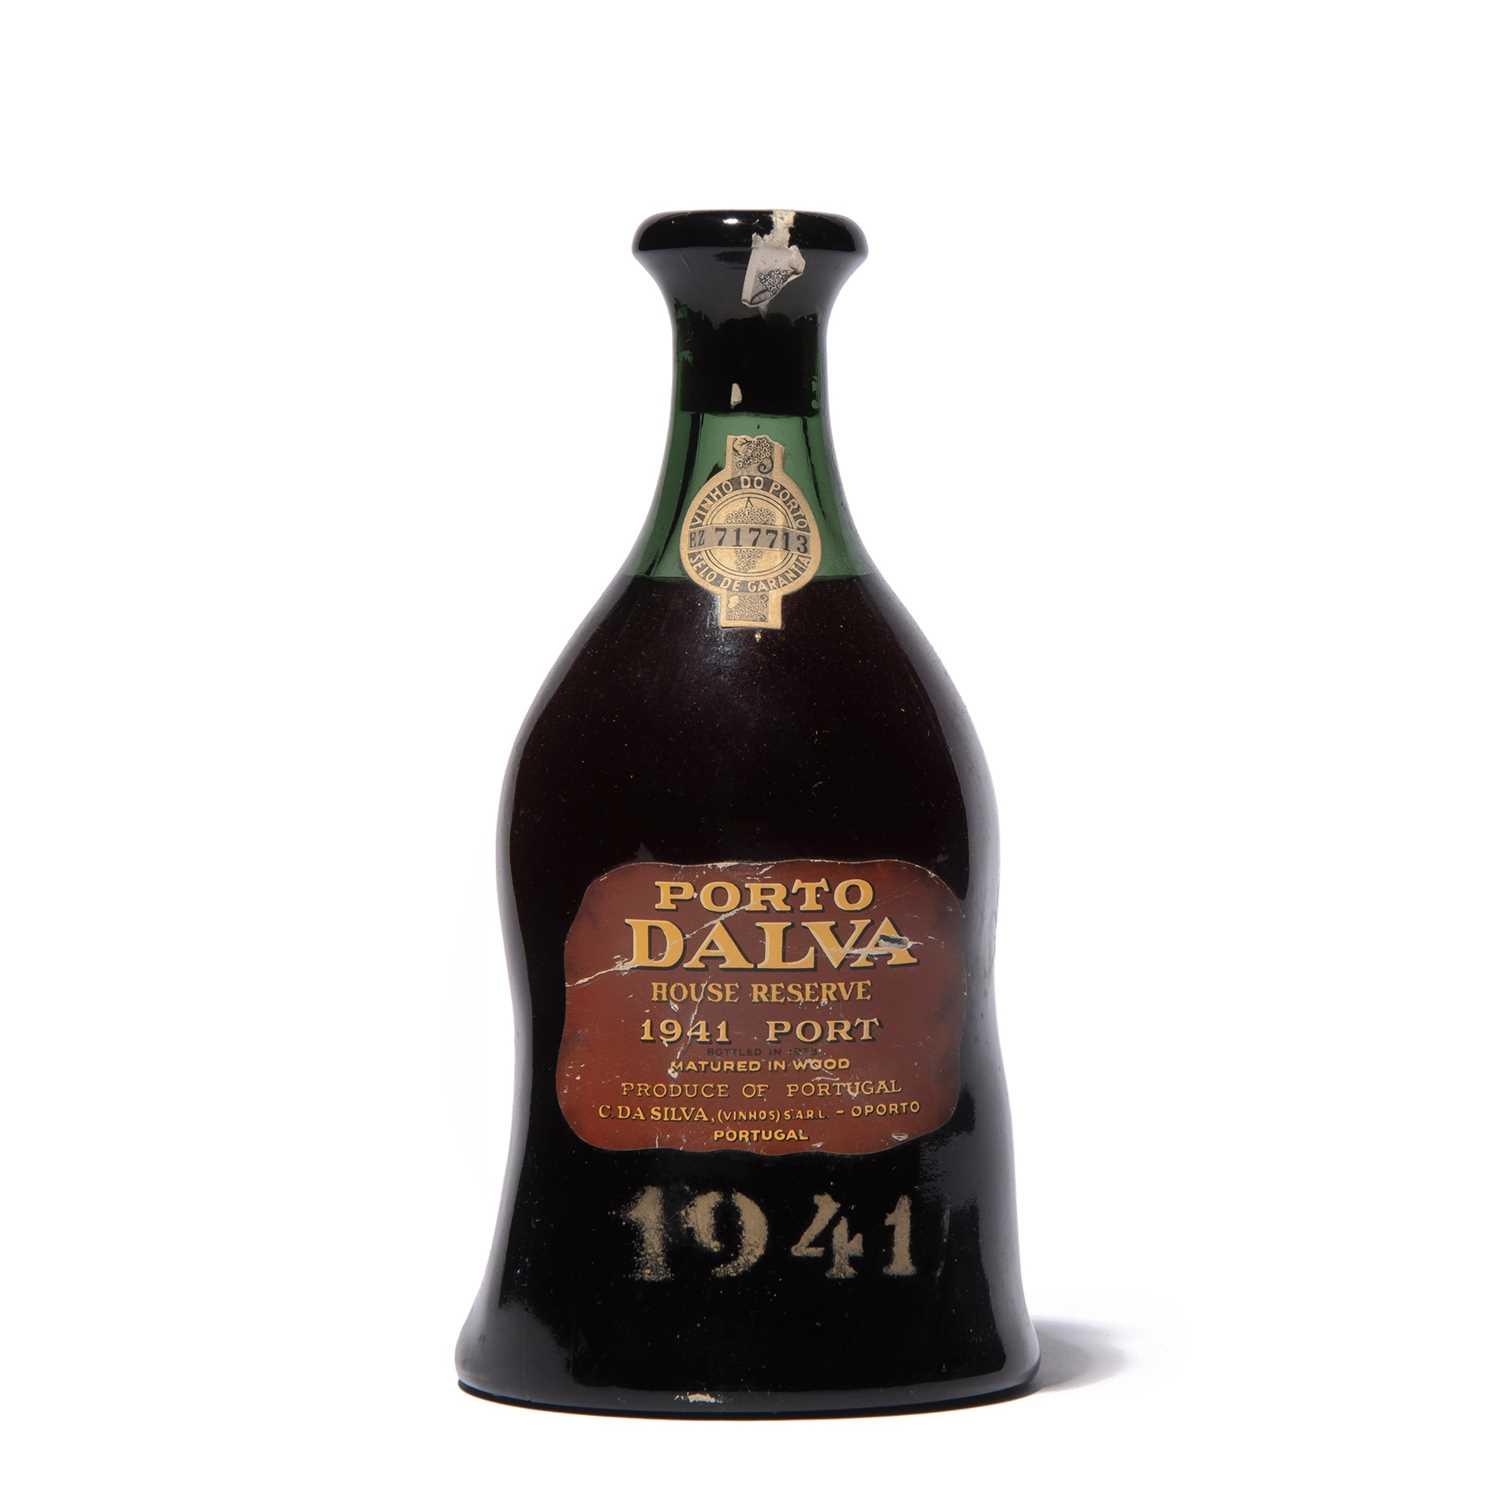 Lot 13 - 1 bottle 1941 Dalva House Reserve Port